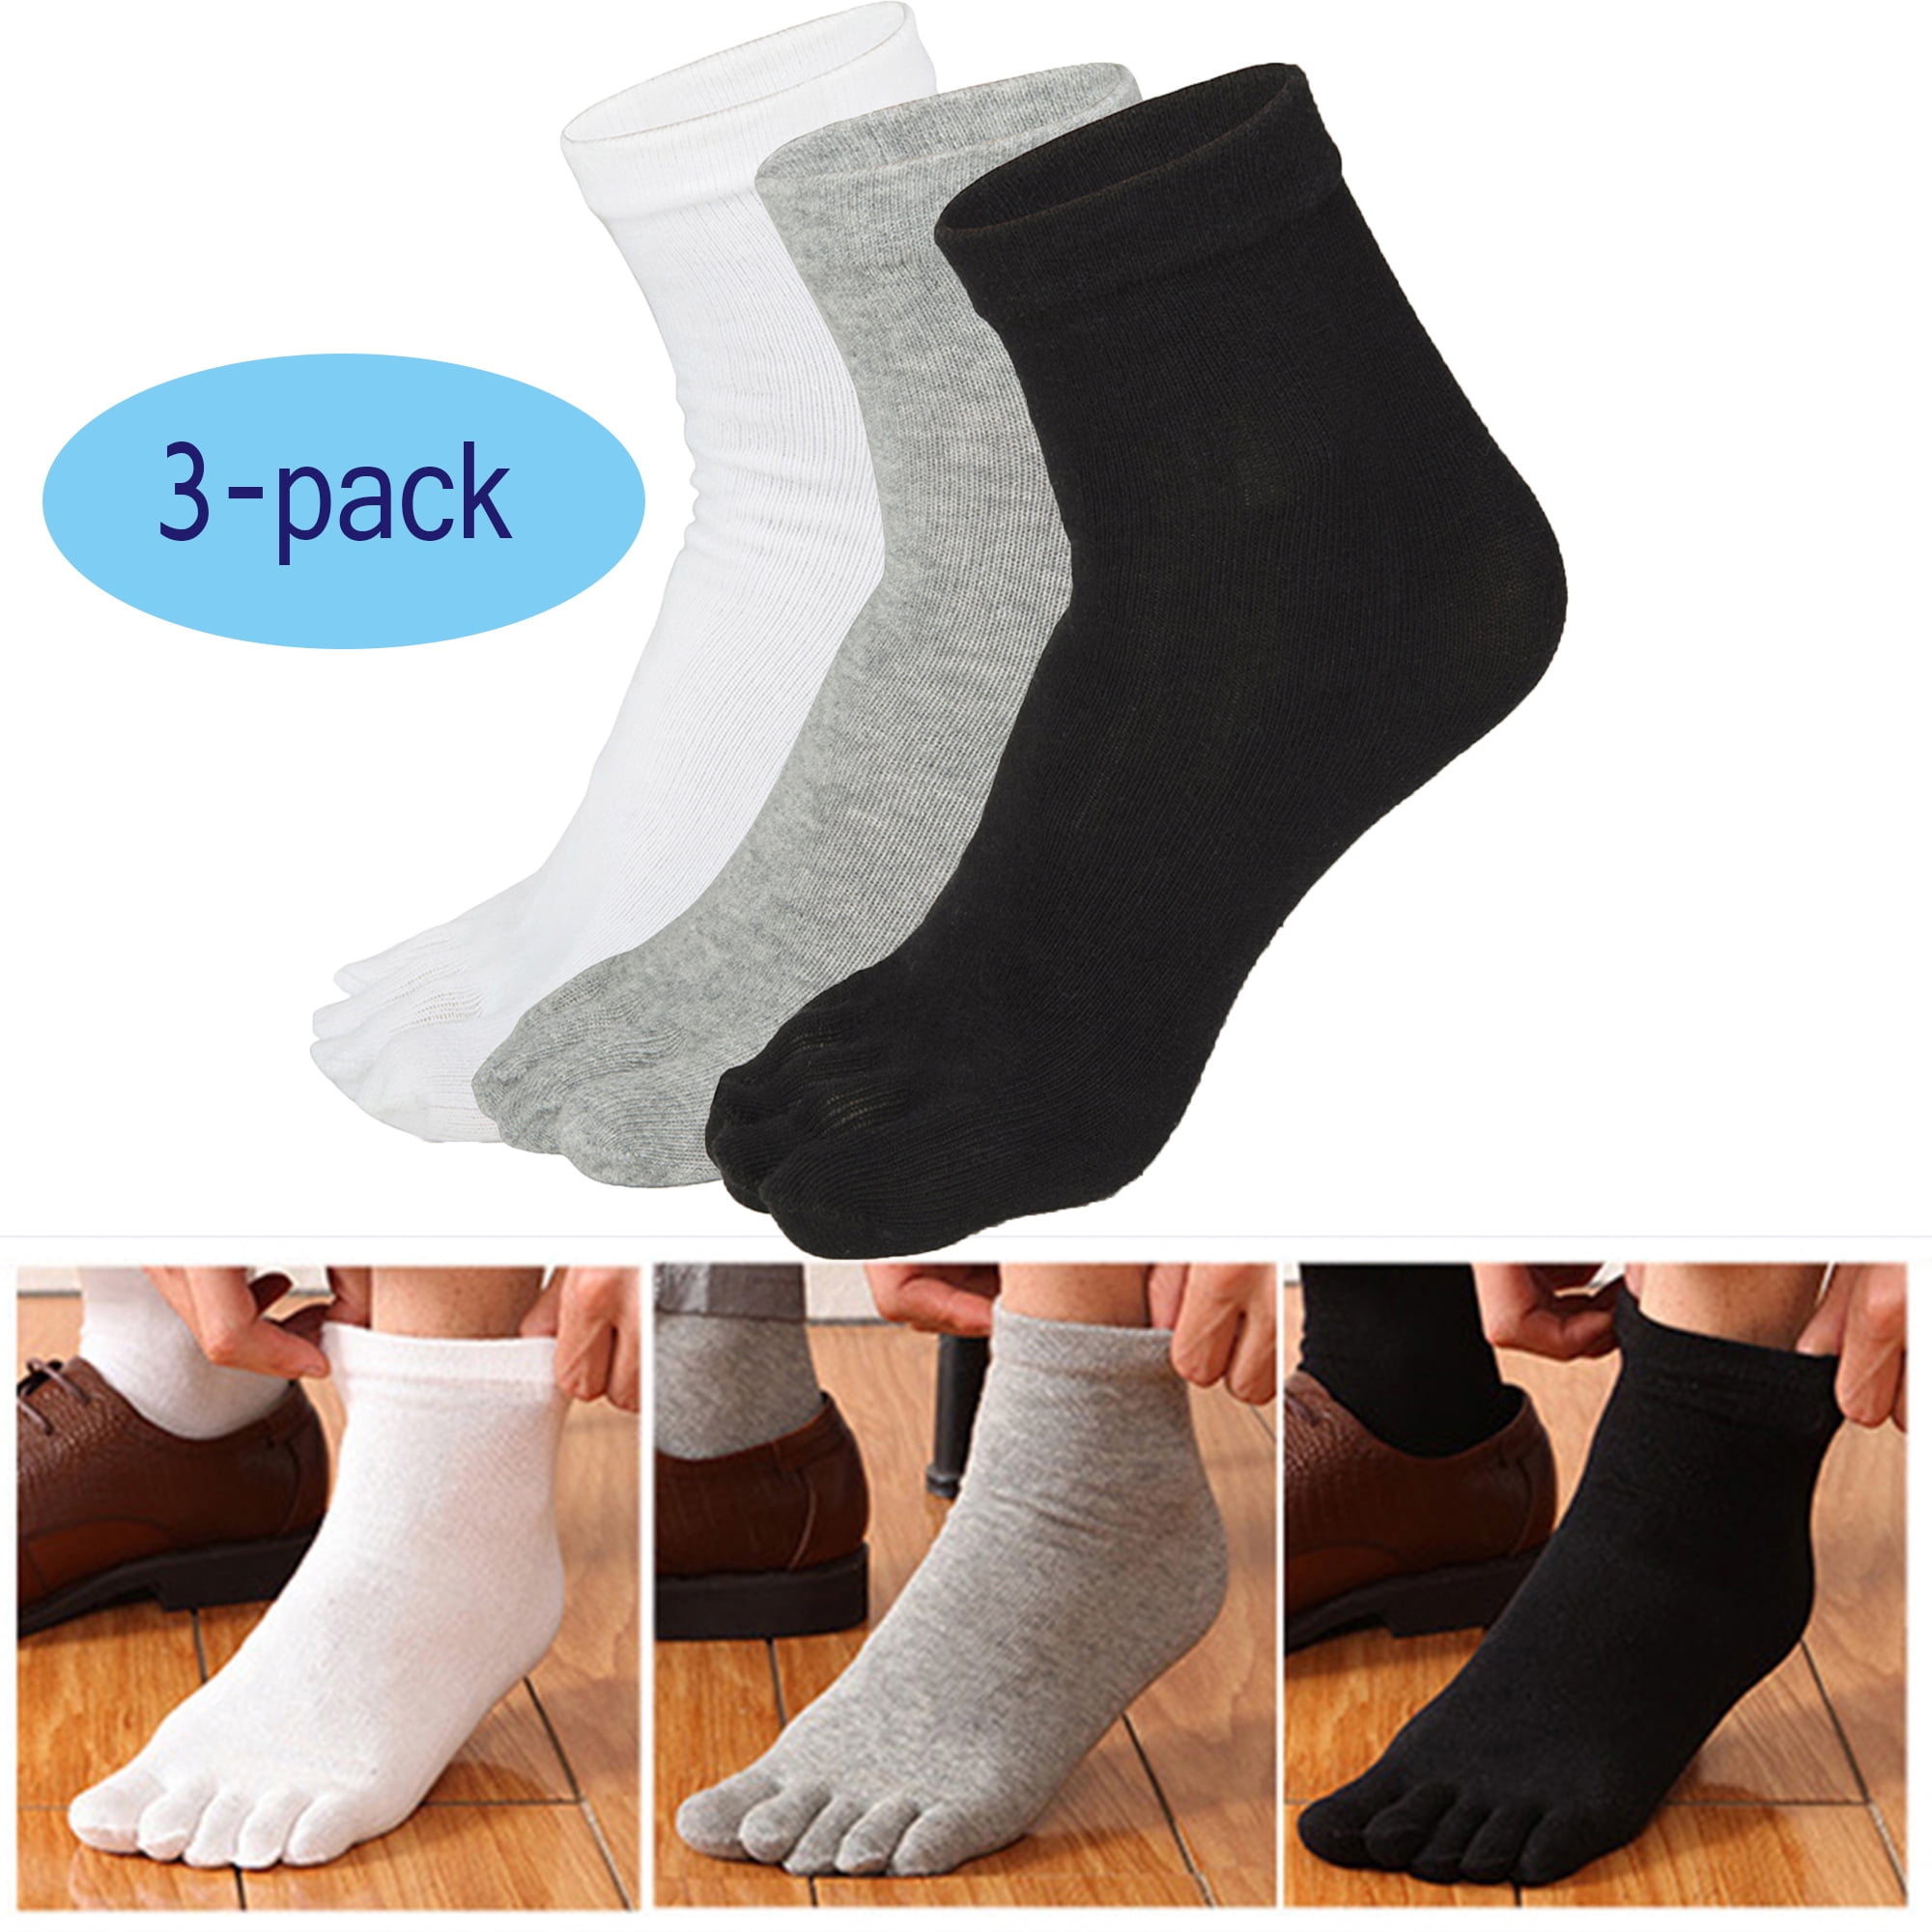 3 Pack Mens Toe Socks Cotton Athletic Running Ankle Five Finger Socks ...